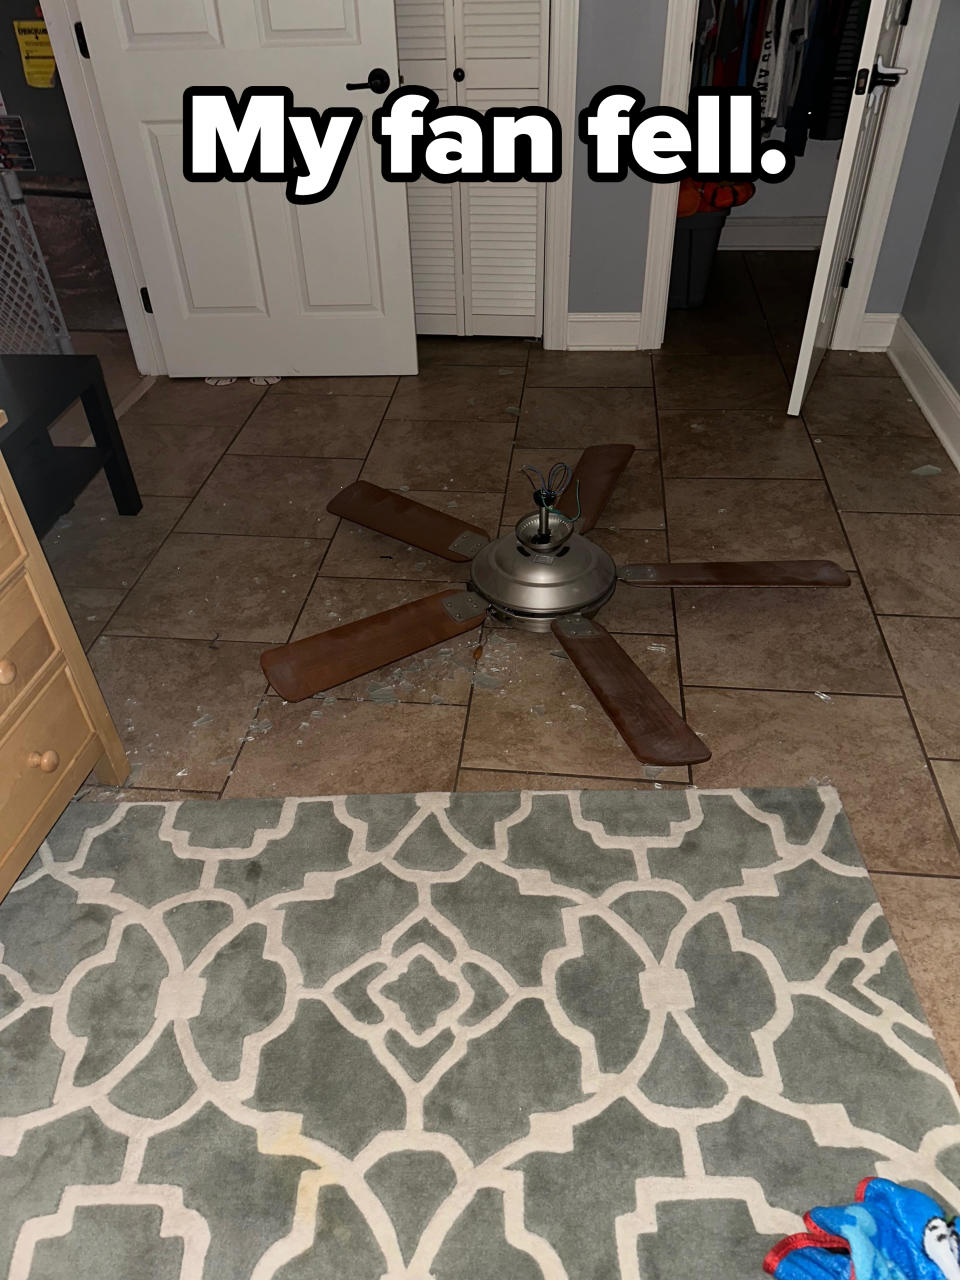 "My fan fell."